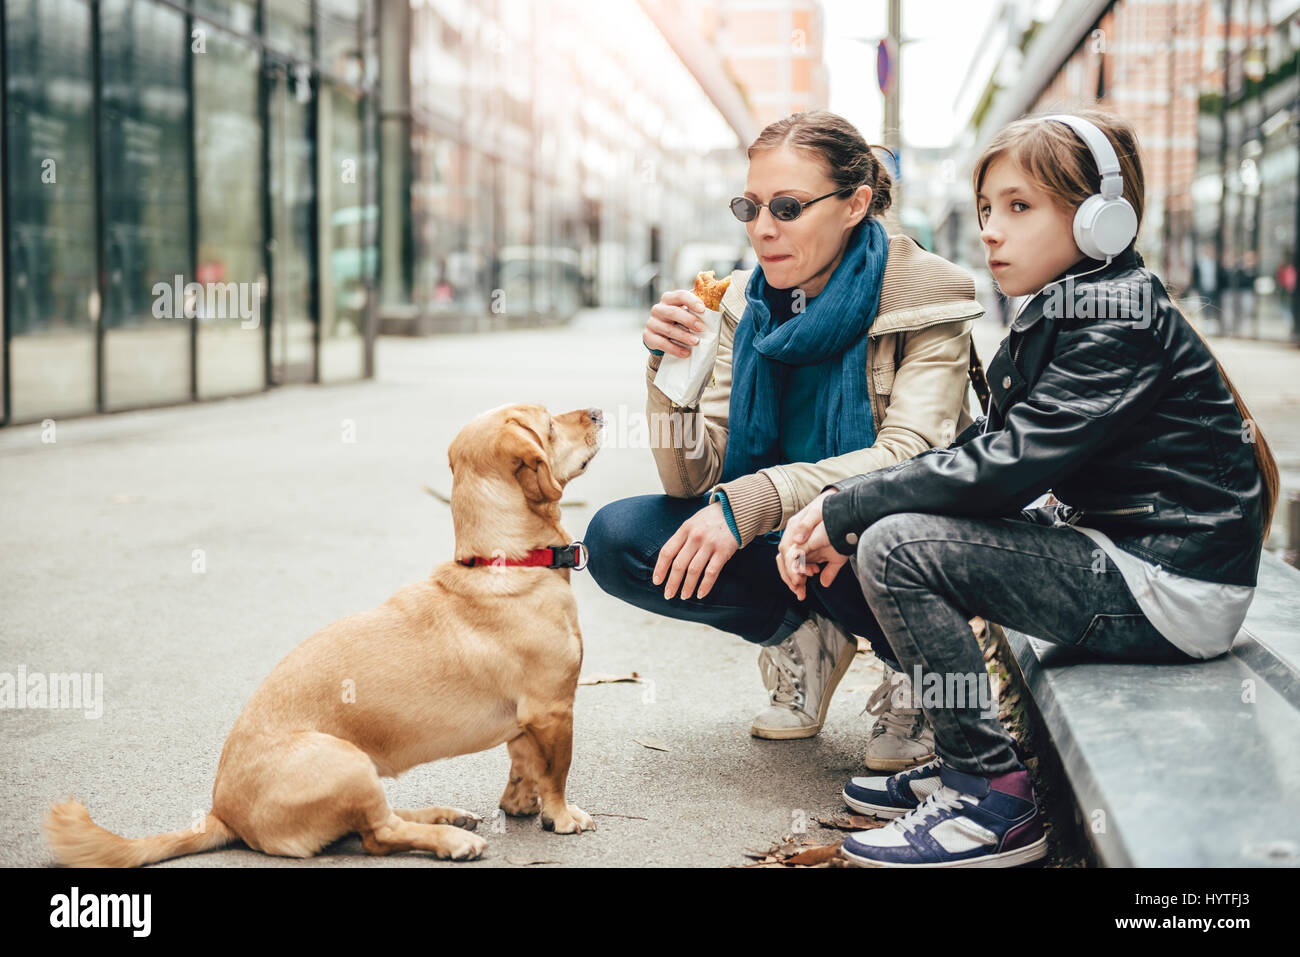 Mutter Sandwich zu essen und Blick auf einen Hund während Tochter anhören von Musik auf der Straße Stockfoto